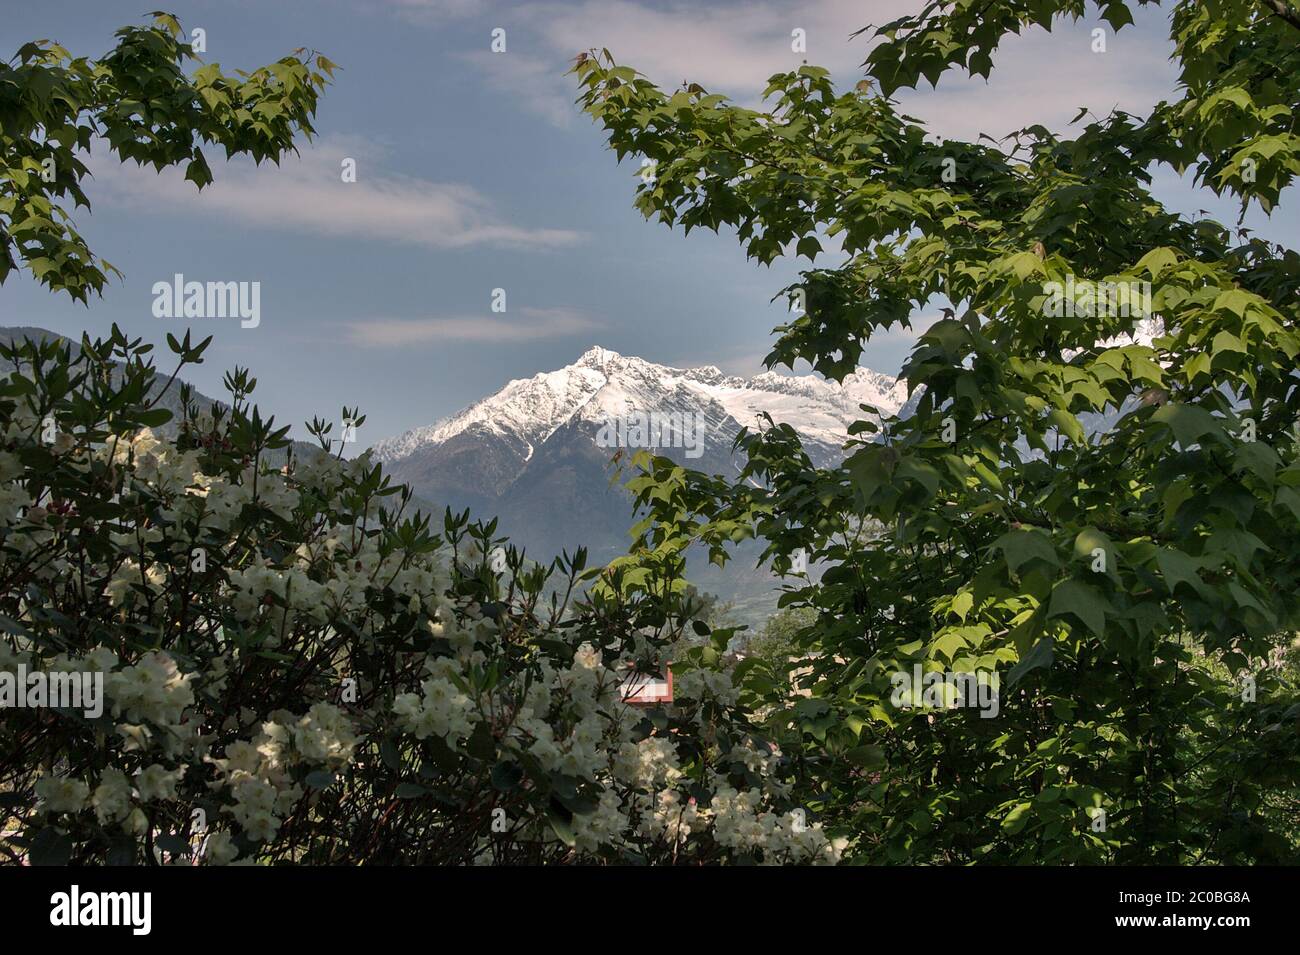 Vue sur un sommet de montagne avec neige entourée d'arbres. Banque D'Images